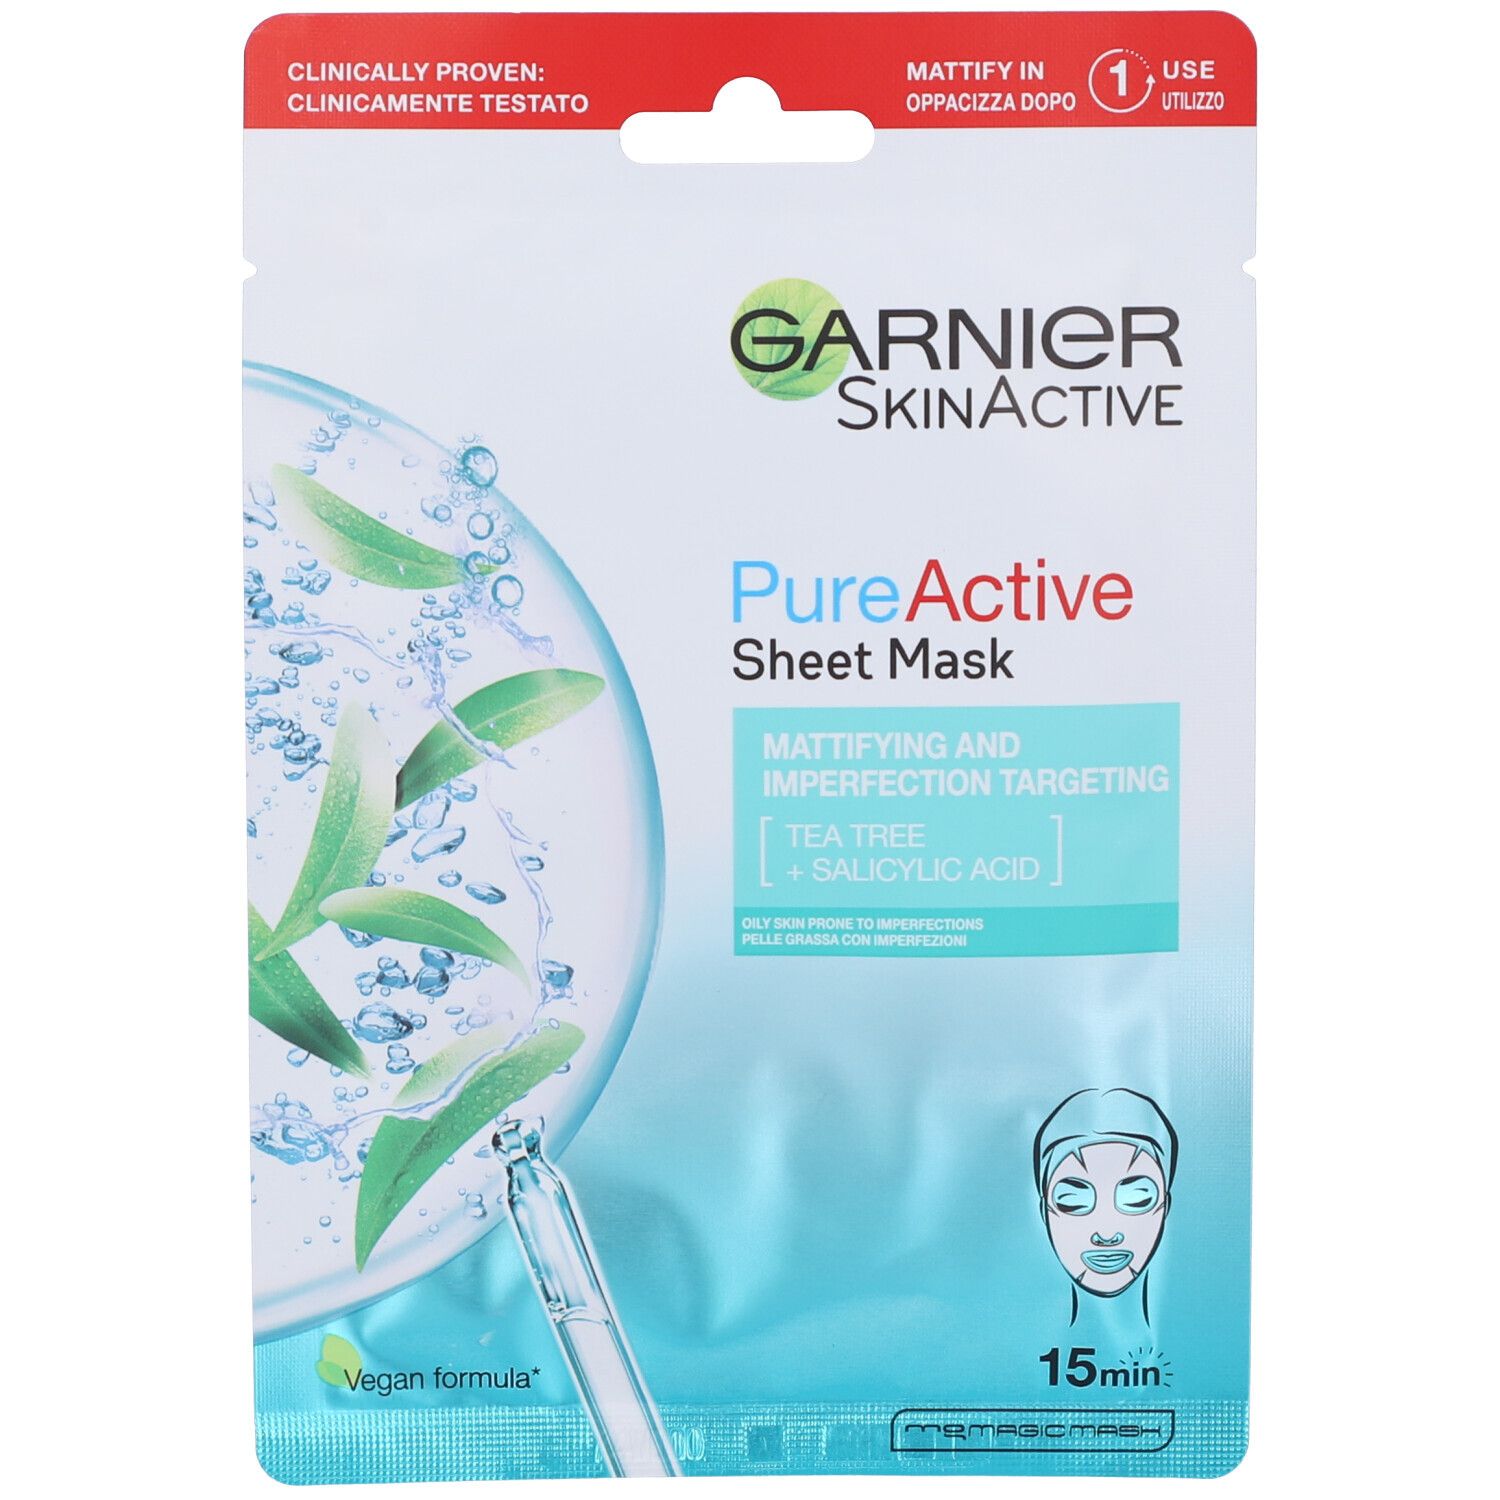 Garnier SkinActive, Maschera in tessuto anti-imperfezioni e idratante Pure Active, Per pelli grasse con imperfezioni